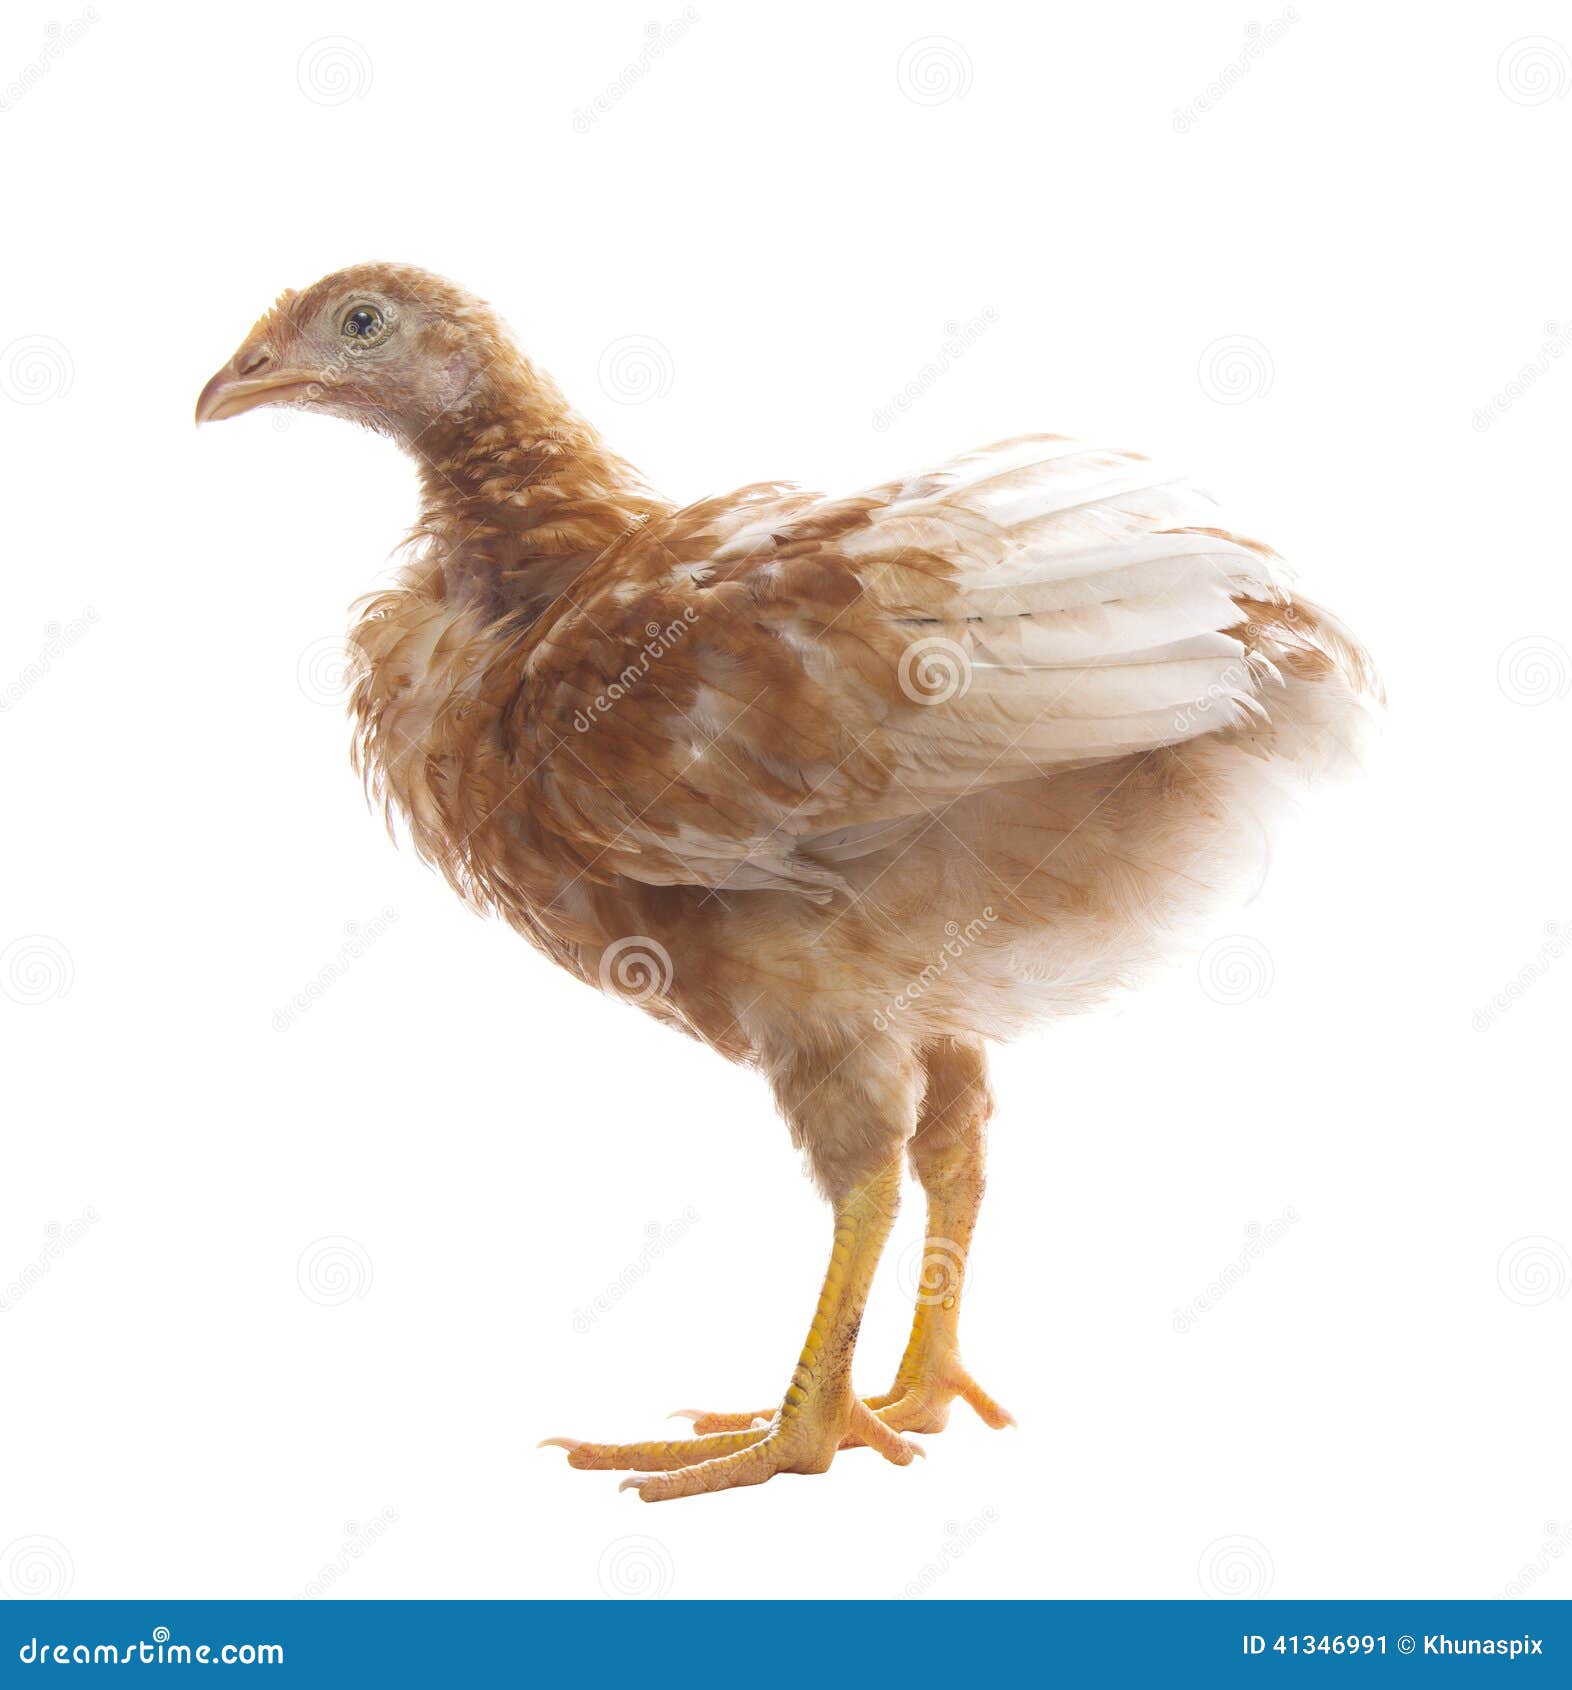 jeune-poulet-se-tenant-sur-l-utilisation-blanche-de-fond-pour-le-b%C3%A9tail-et-41346991.jpg